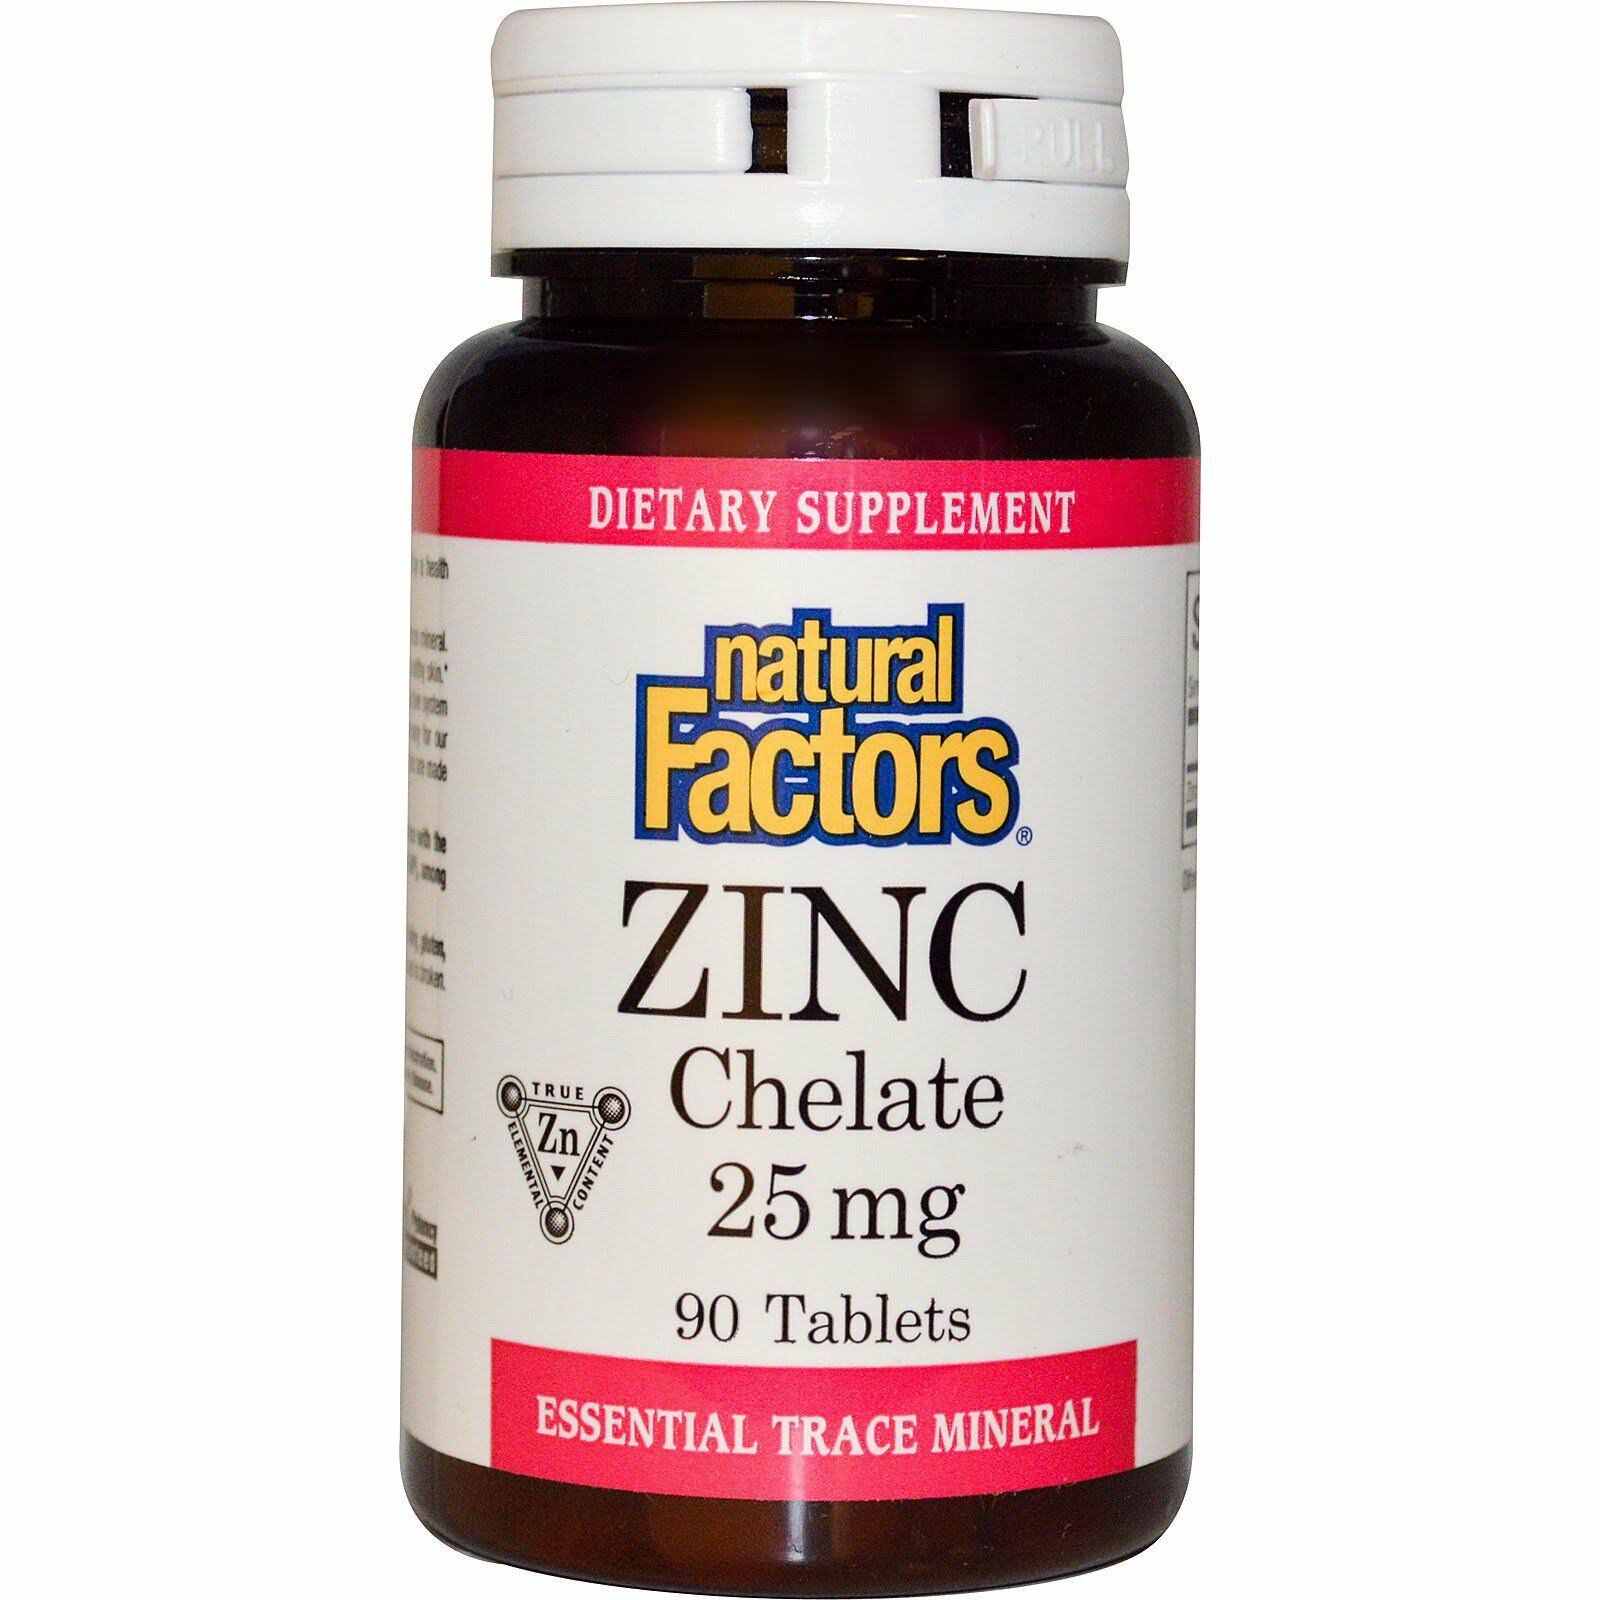 Natural Factors Zinc Chelate - 90 Tablets, 25mg